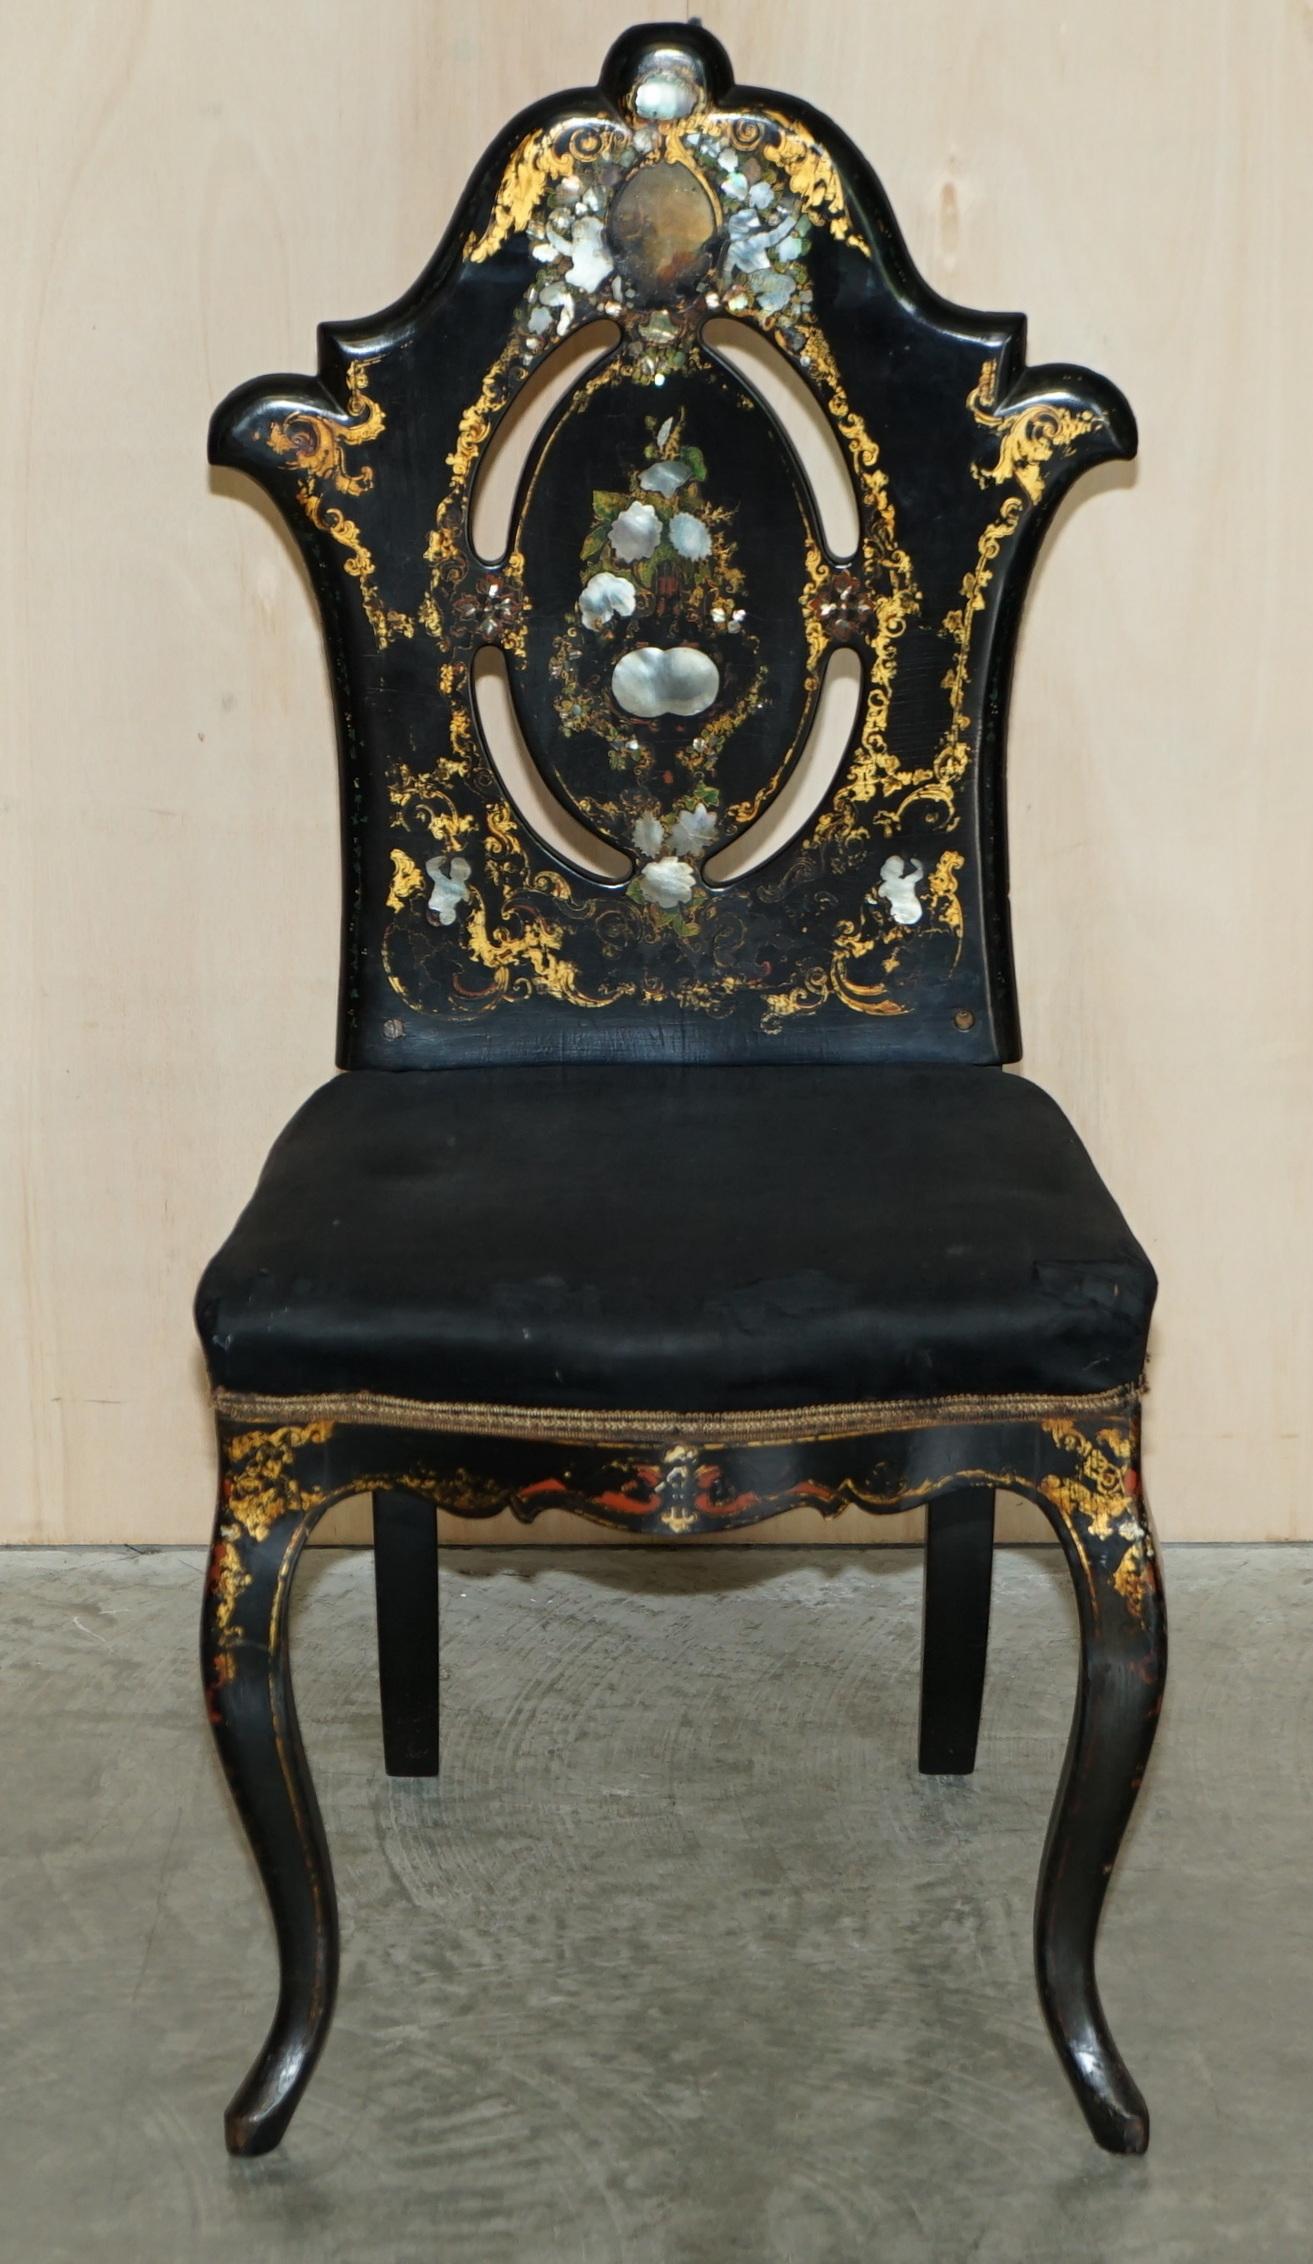 Wir freuen uns, diese vier exquisiten, originalen Regency-Stühle mit Intarsien aus Perlmutt und schwarzem Lack aus der Zeit um 1815 zum Verkauf anbieten zu können

Eine sehr gut aussehende, gut gemachte und dekorative Garnitur, in Wahrheit habe